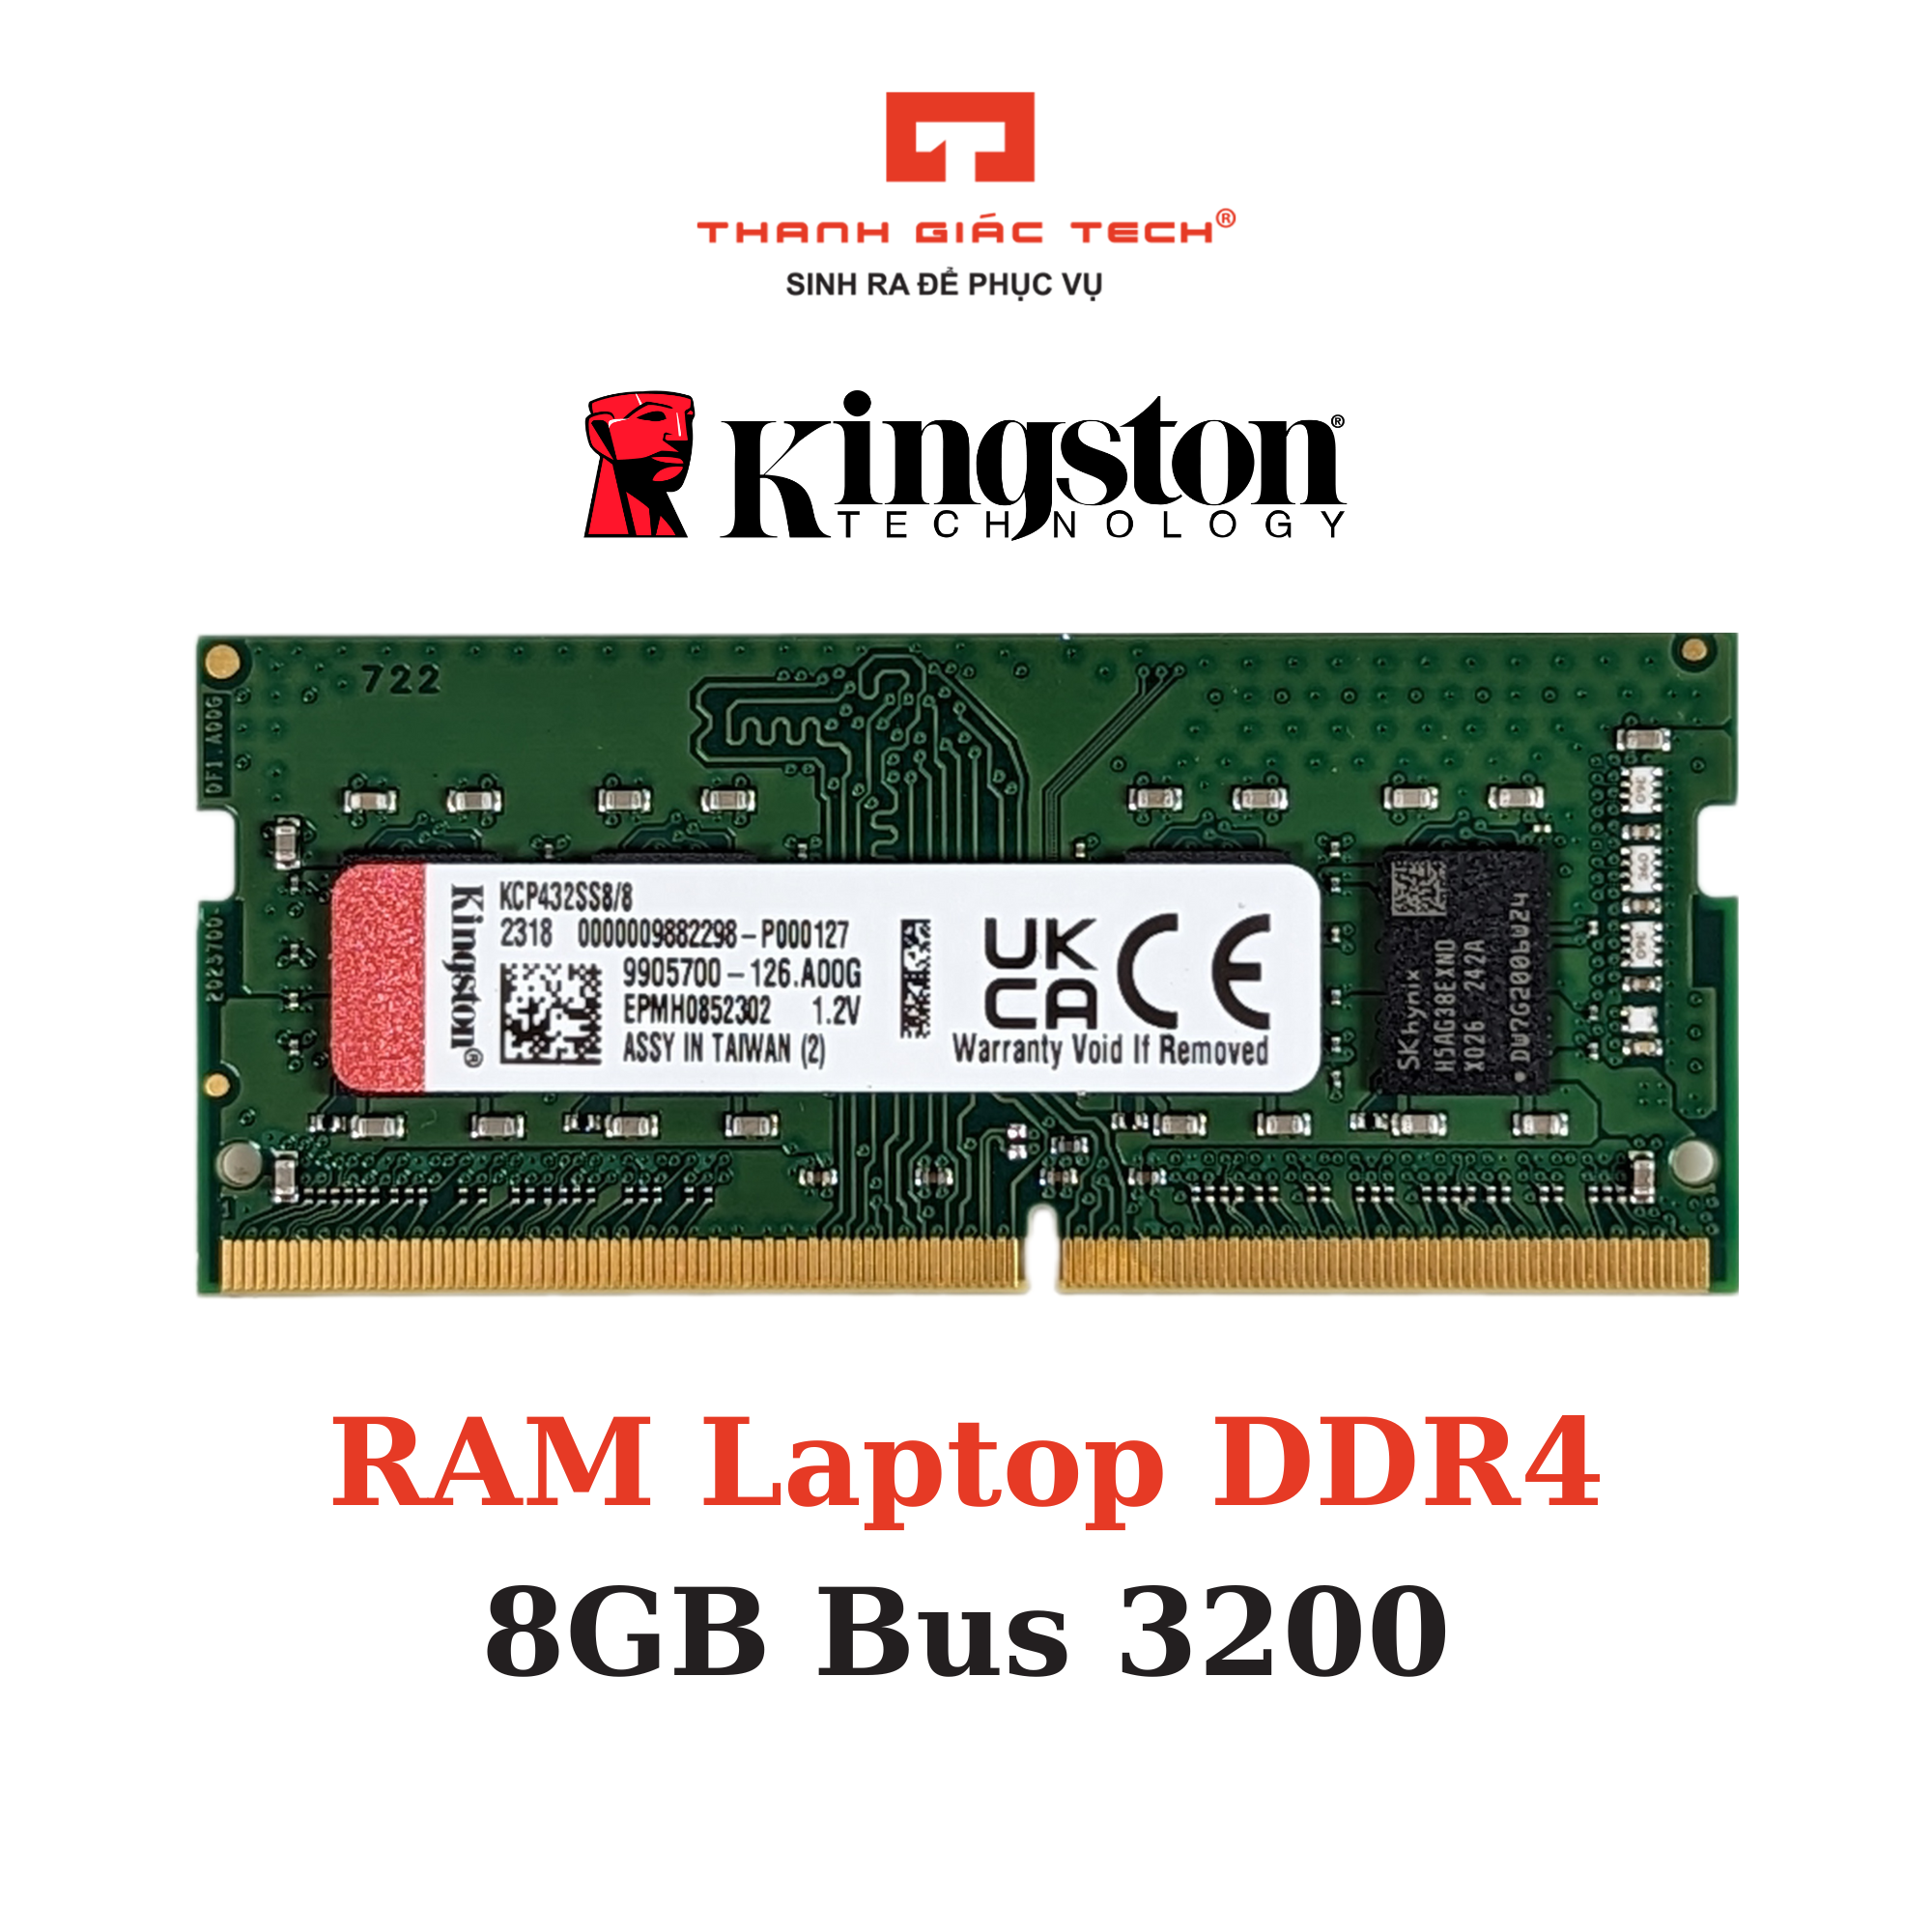 Ram Laptop Kingston 8GB DDR4 Chính Hãng - Bảo Hành 3 Năm